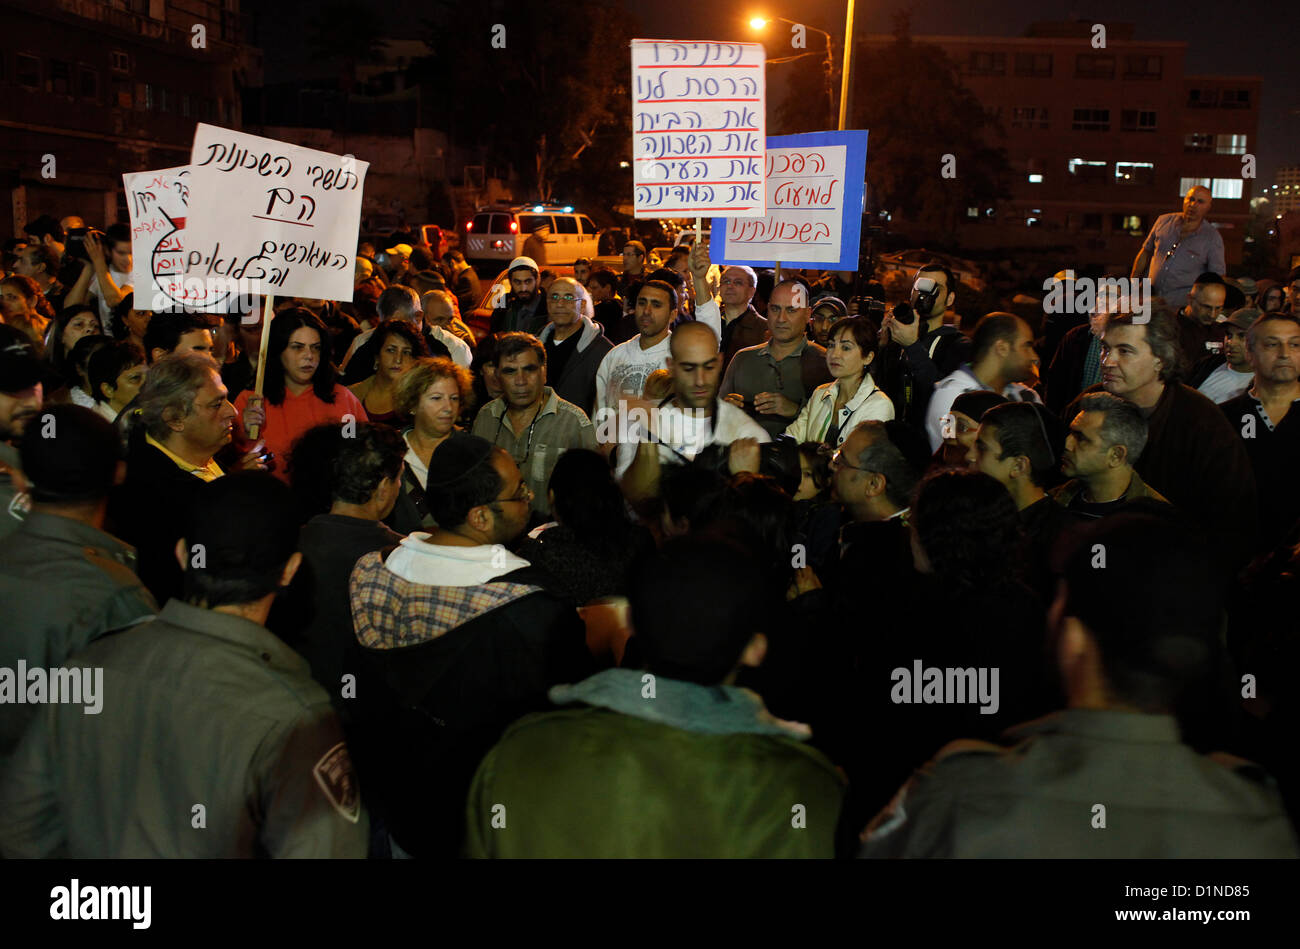 Policías fronterizos israelíes bloqueando manifestantes anti migrante en Tel Aviv, en respuesta a la publicación de un incidente en el cual un ciudadano eritreo fue arrestado bajo sospecha de violar a una mujer de 83 años en el sur de Tel Aviv, el 31 de diciembre de 2012. Foto de stock